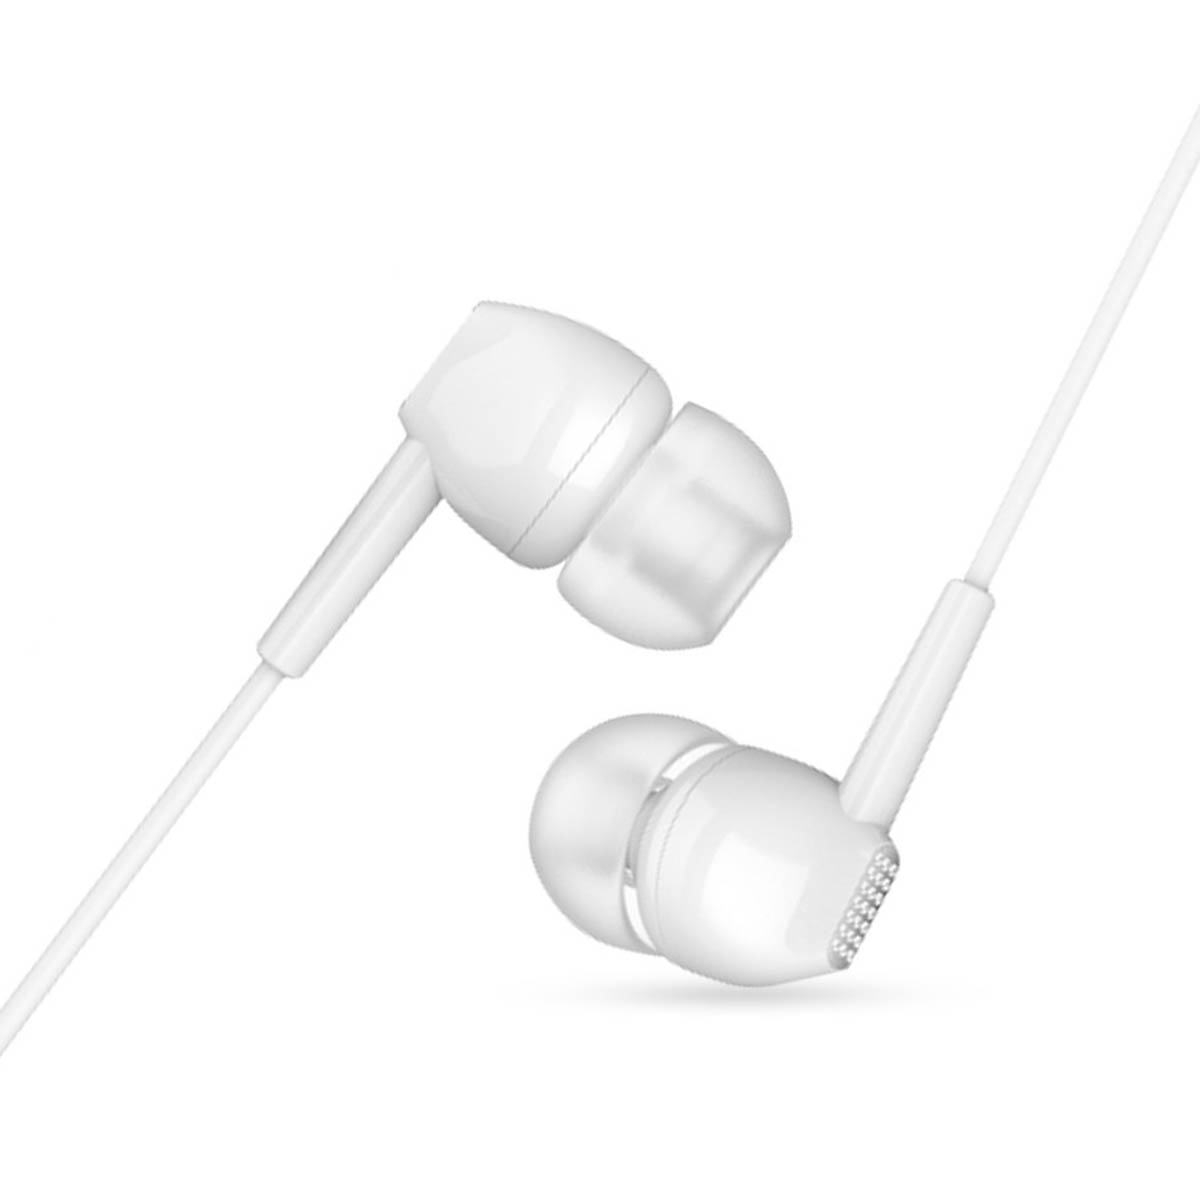 Гарнитура (наушники с микрофоном) проводная, EARLDOM BASS EARPHONES ET-E42, цвет белый